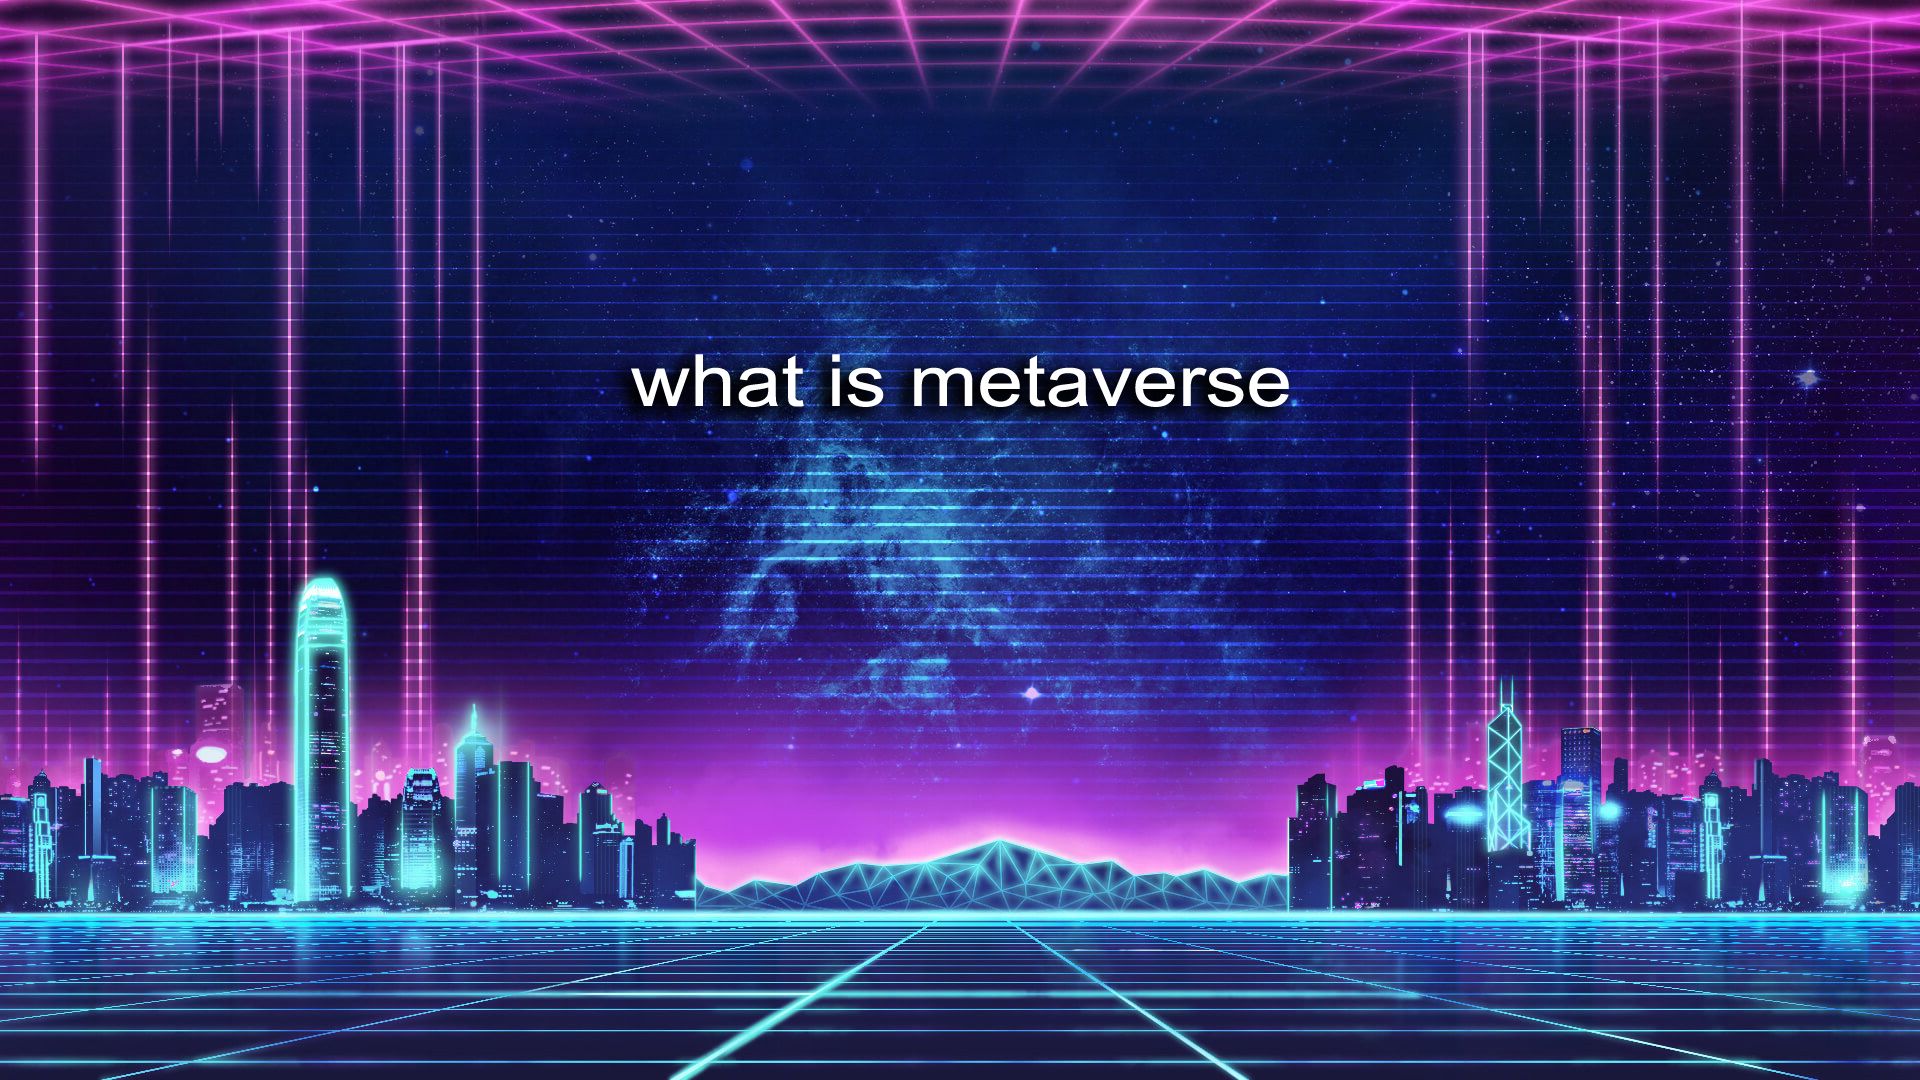 图片展示了一个充满未来感的虚拟城市景观，紫色调，有“what is metaverse”字样，体现了数字世界或元宇宙的概念。